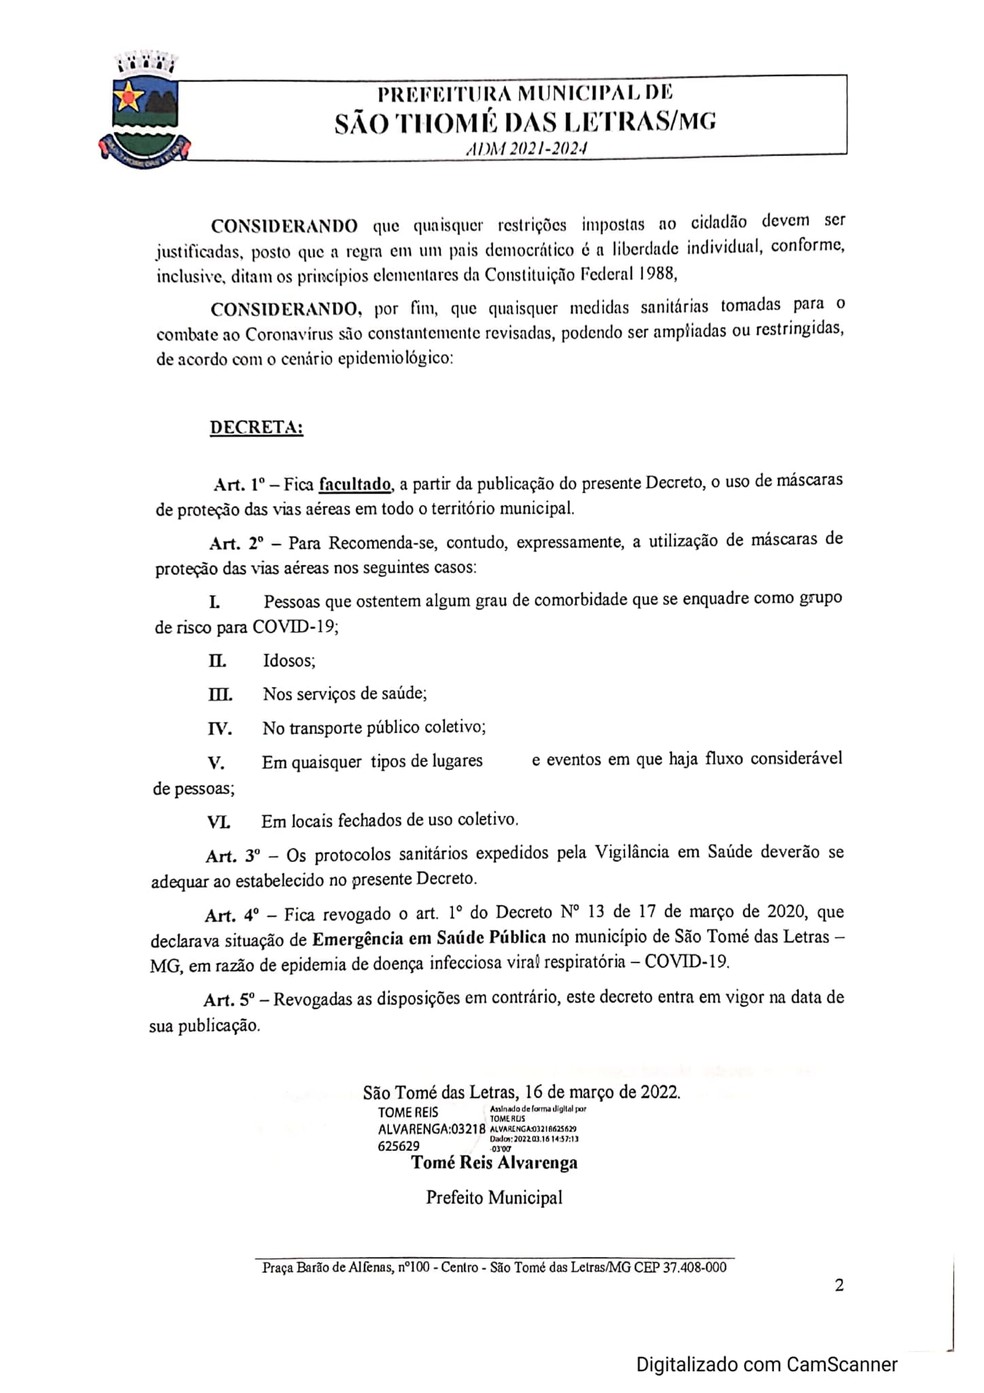 Covid-:19: São Tomé das Letras publica decreto que torna facultativo uso de máscaras  — Foto: Divulgação/Prefeitura de São Tomé das Letras 